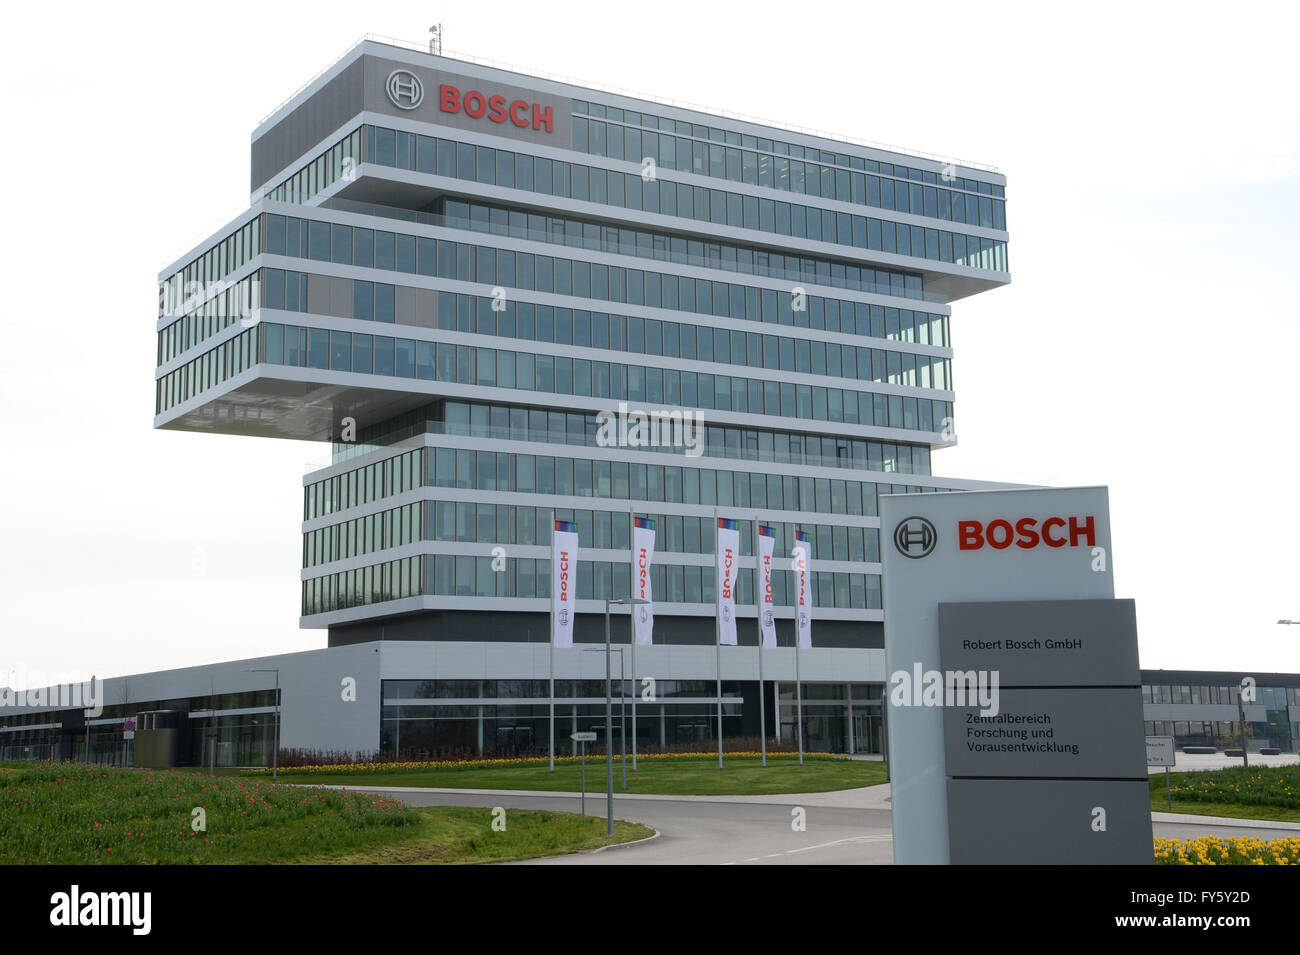 Renningen, Alemania. 22 abr, 2016. El logotipo de Bosch es visto en un edificio del campus de Bosch en Renningen, Alemania, el 22 de abril de 2016. Foto: Franziska Kraufmann/dpa/Alamy Live News Foto de stock